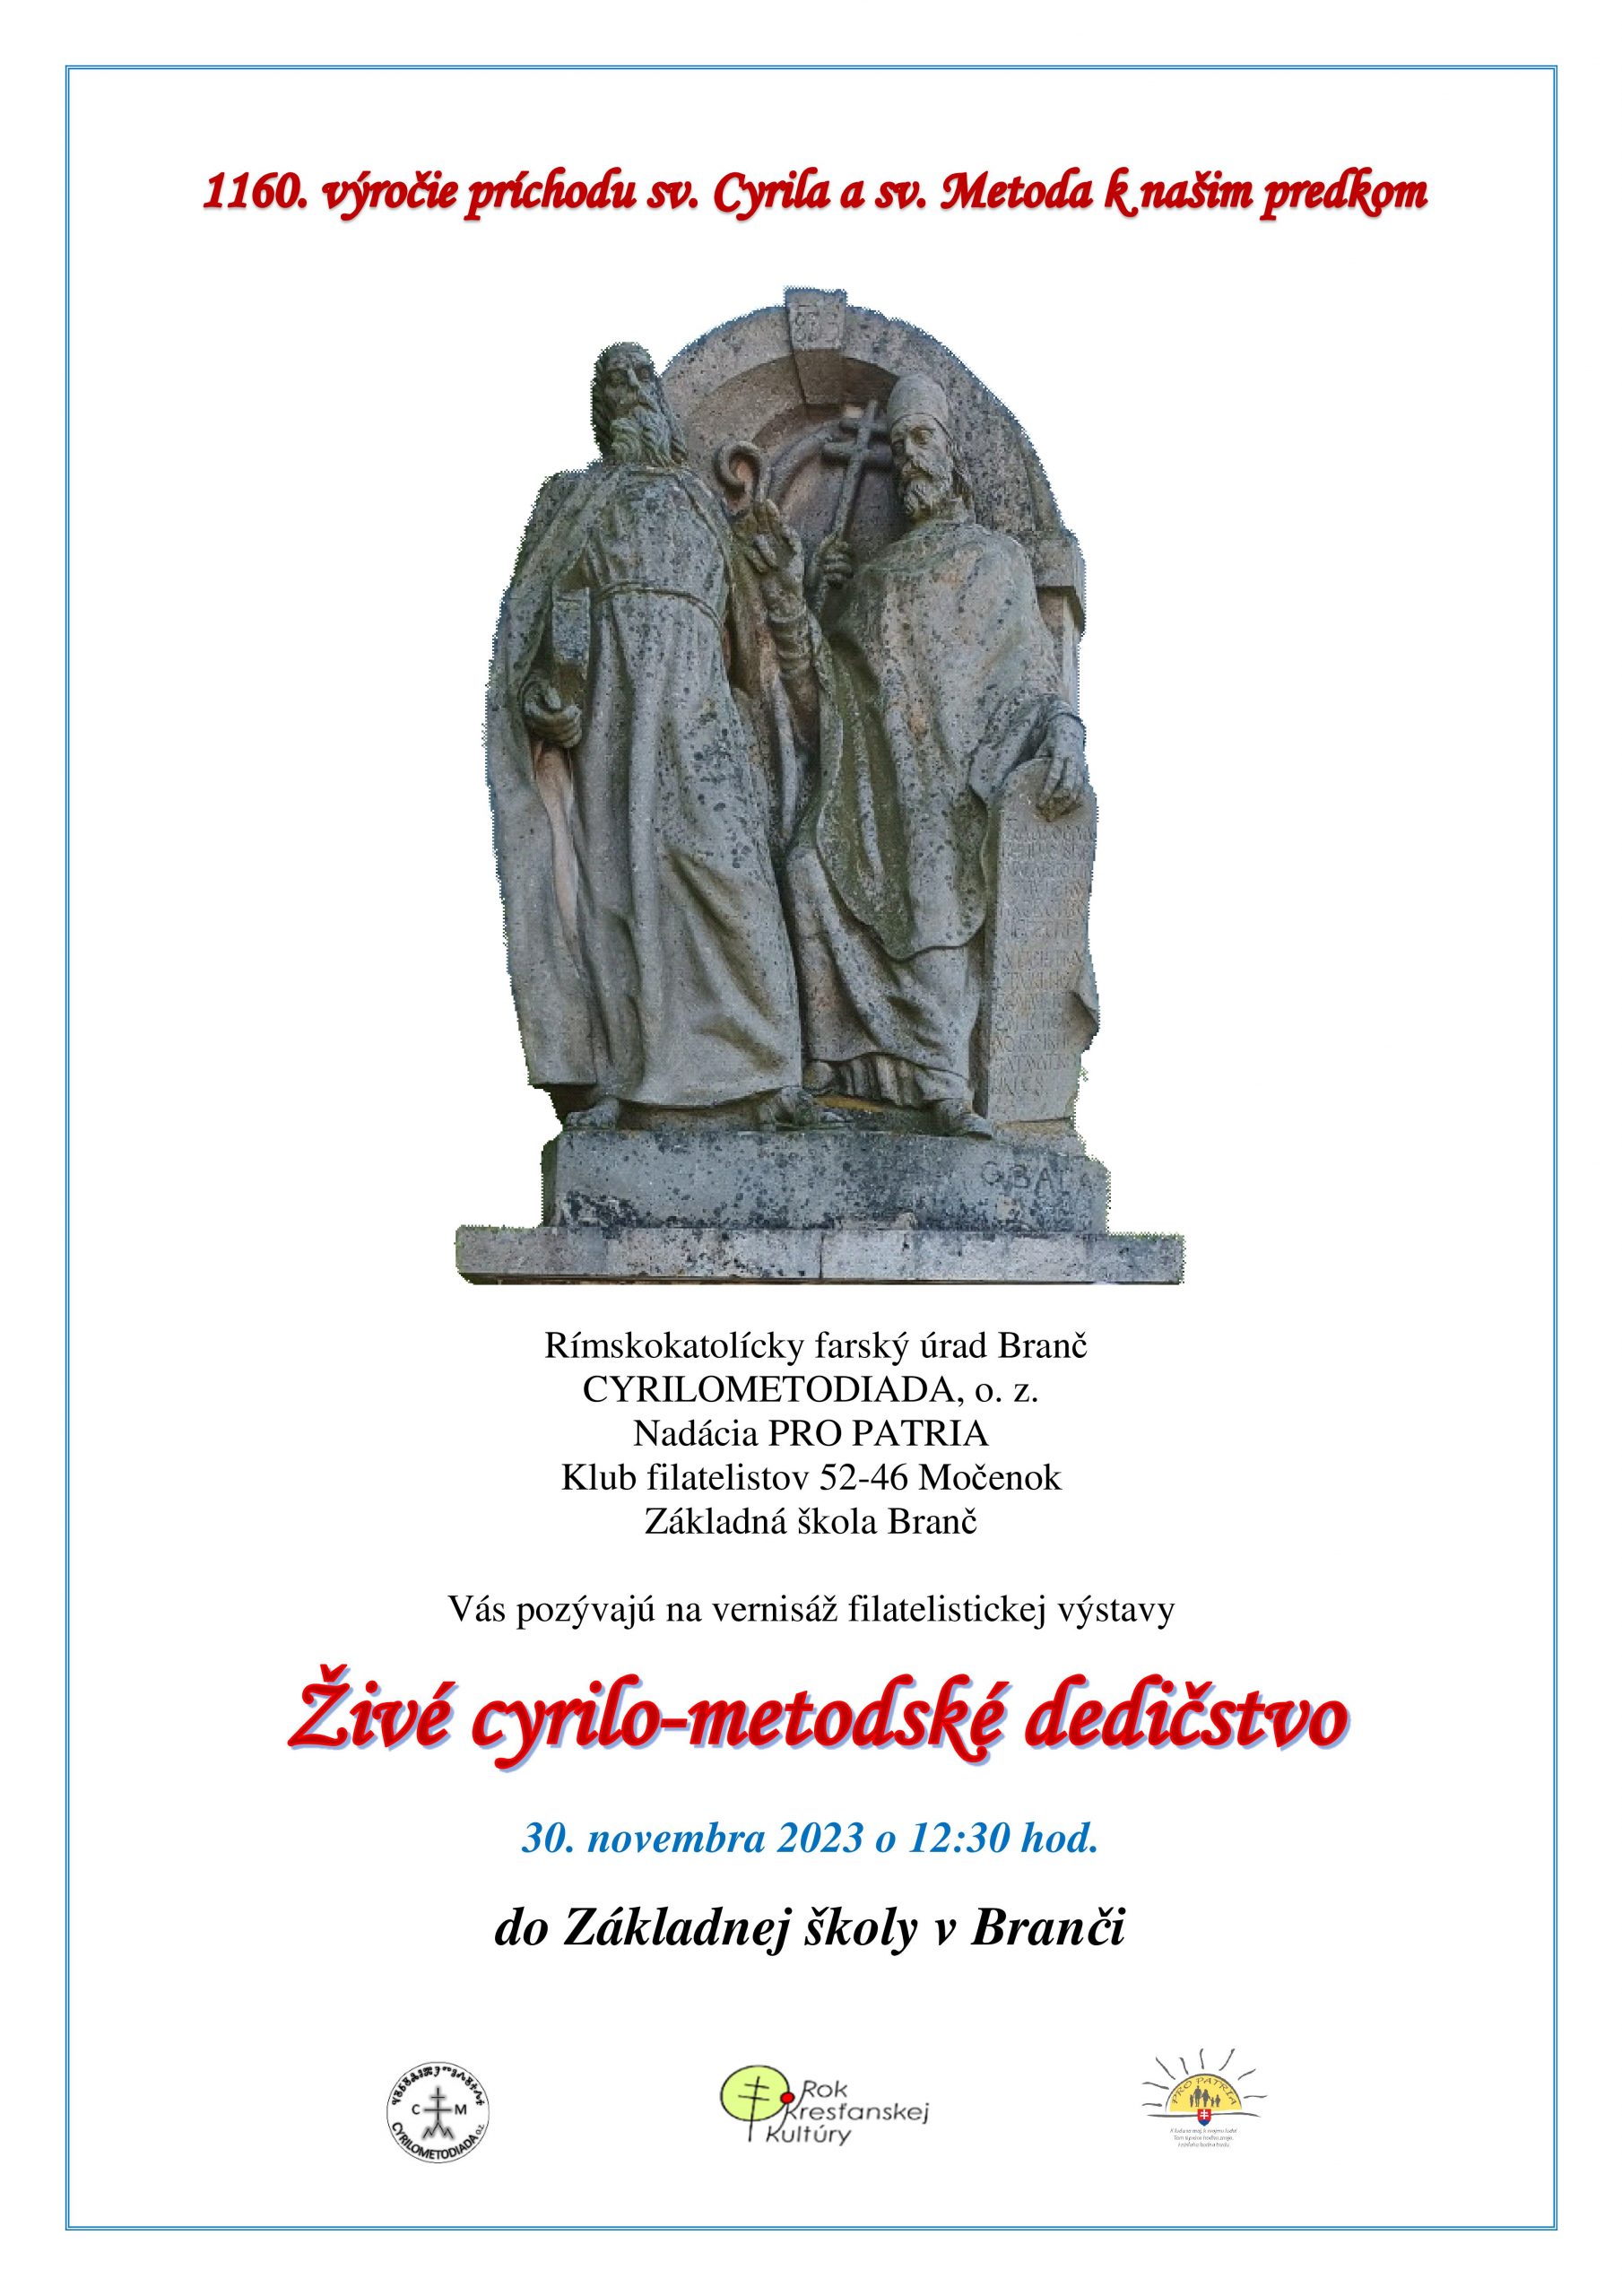 Vernisáž filatelistickej výstavy ŽIVÉ CYRILO-METODSKÉ DEDIČSTVO